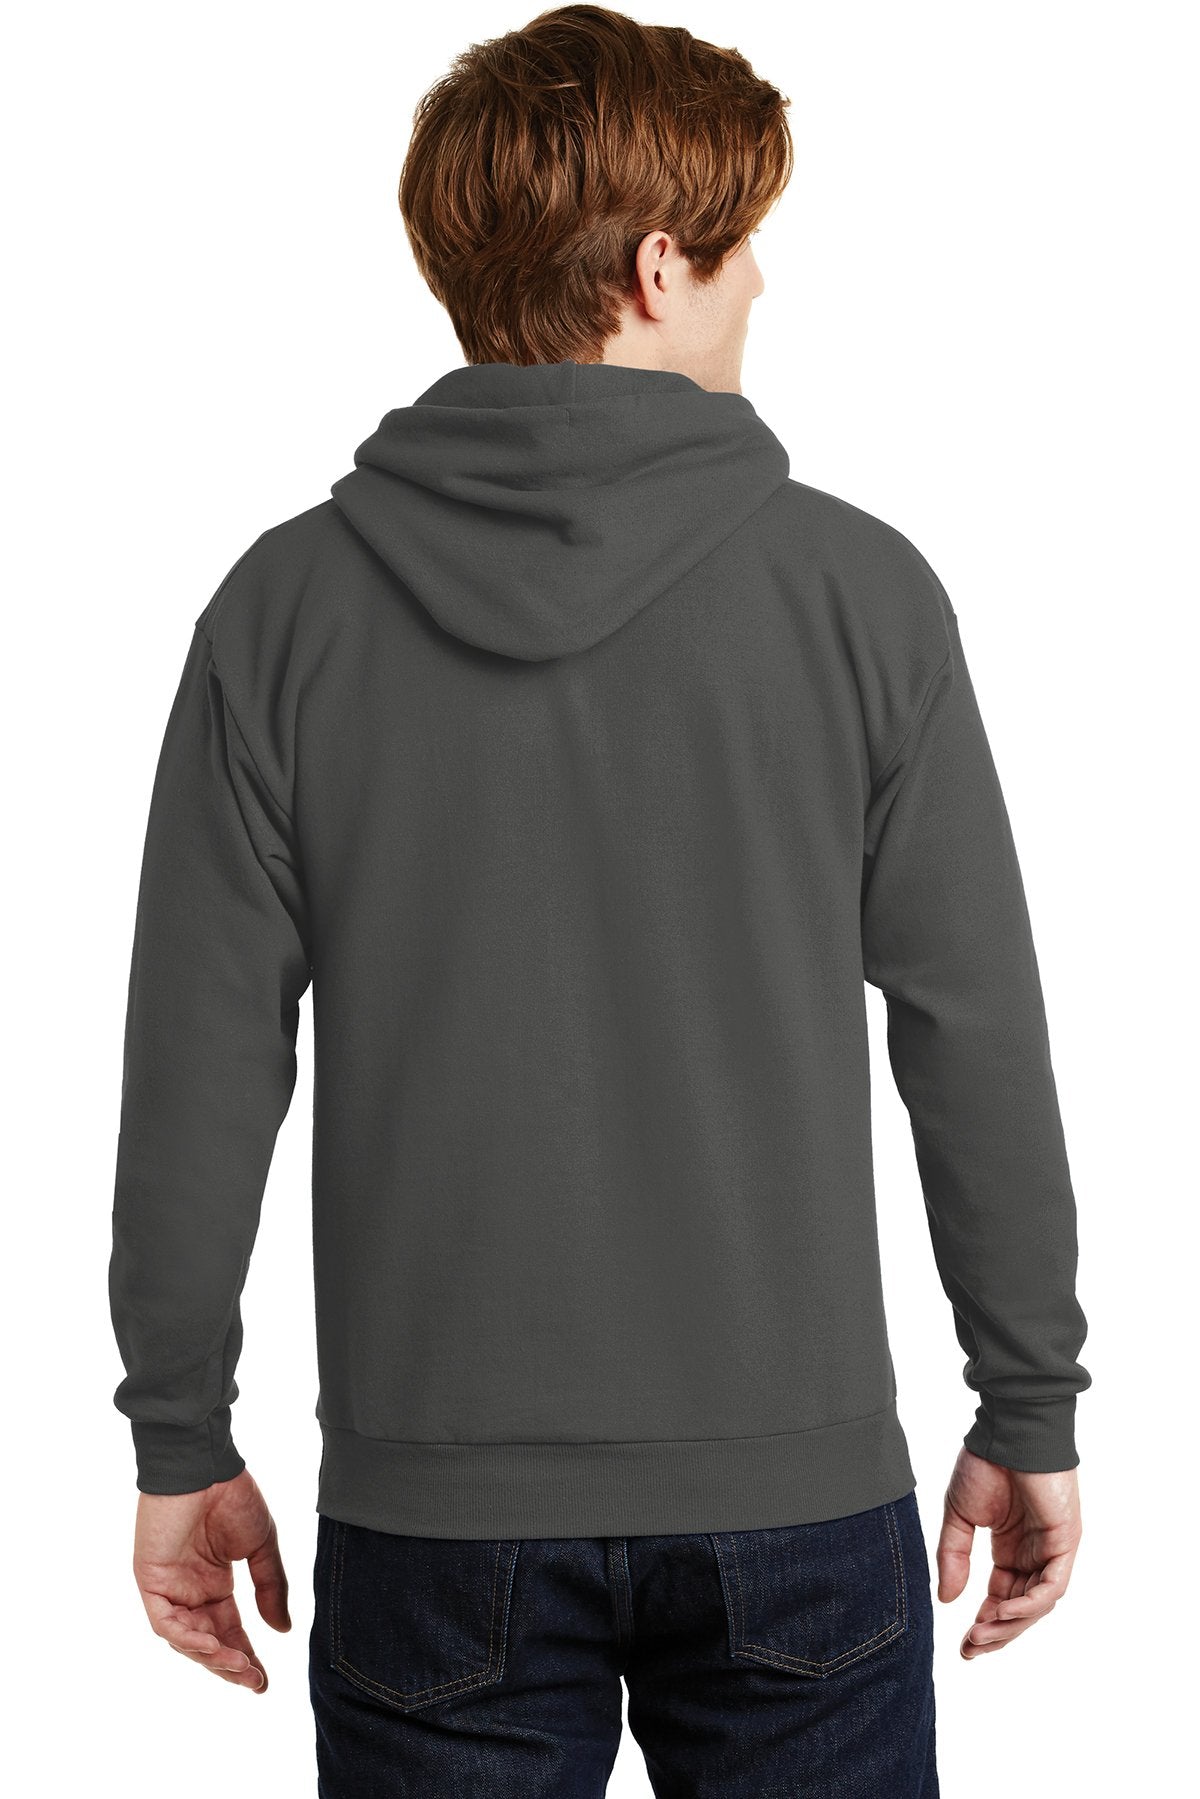 Custom Hanes EcoSmart Pullover Hooded Sweatshirt Smoke Grey